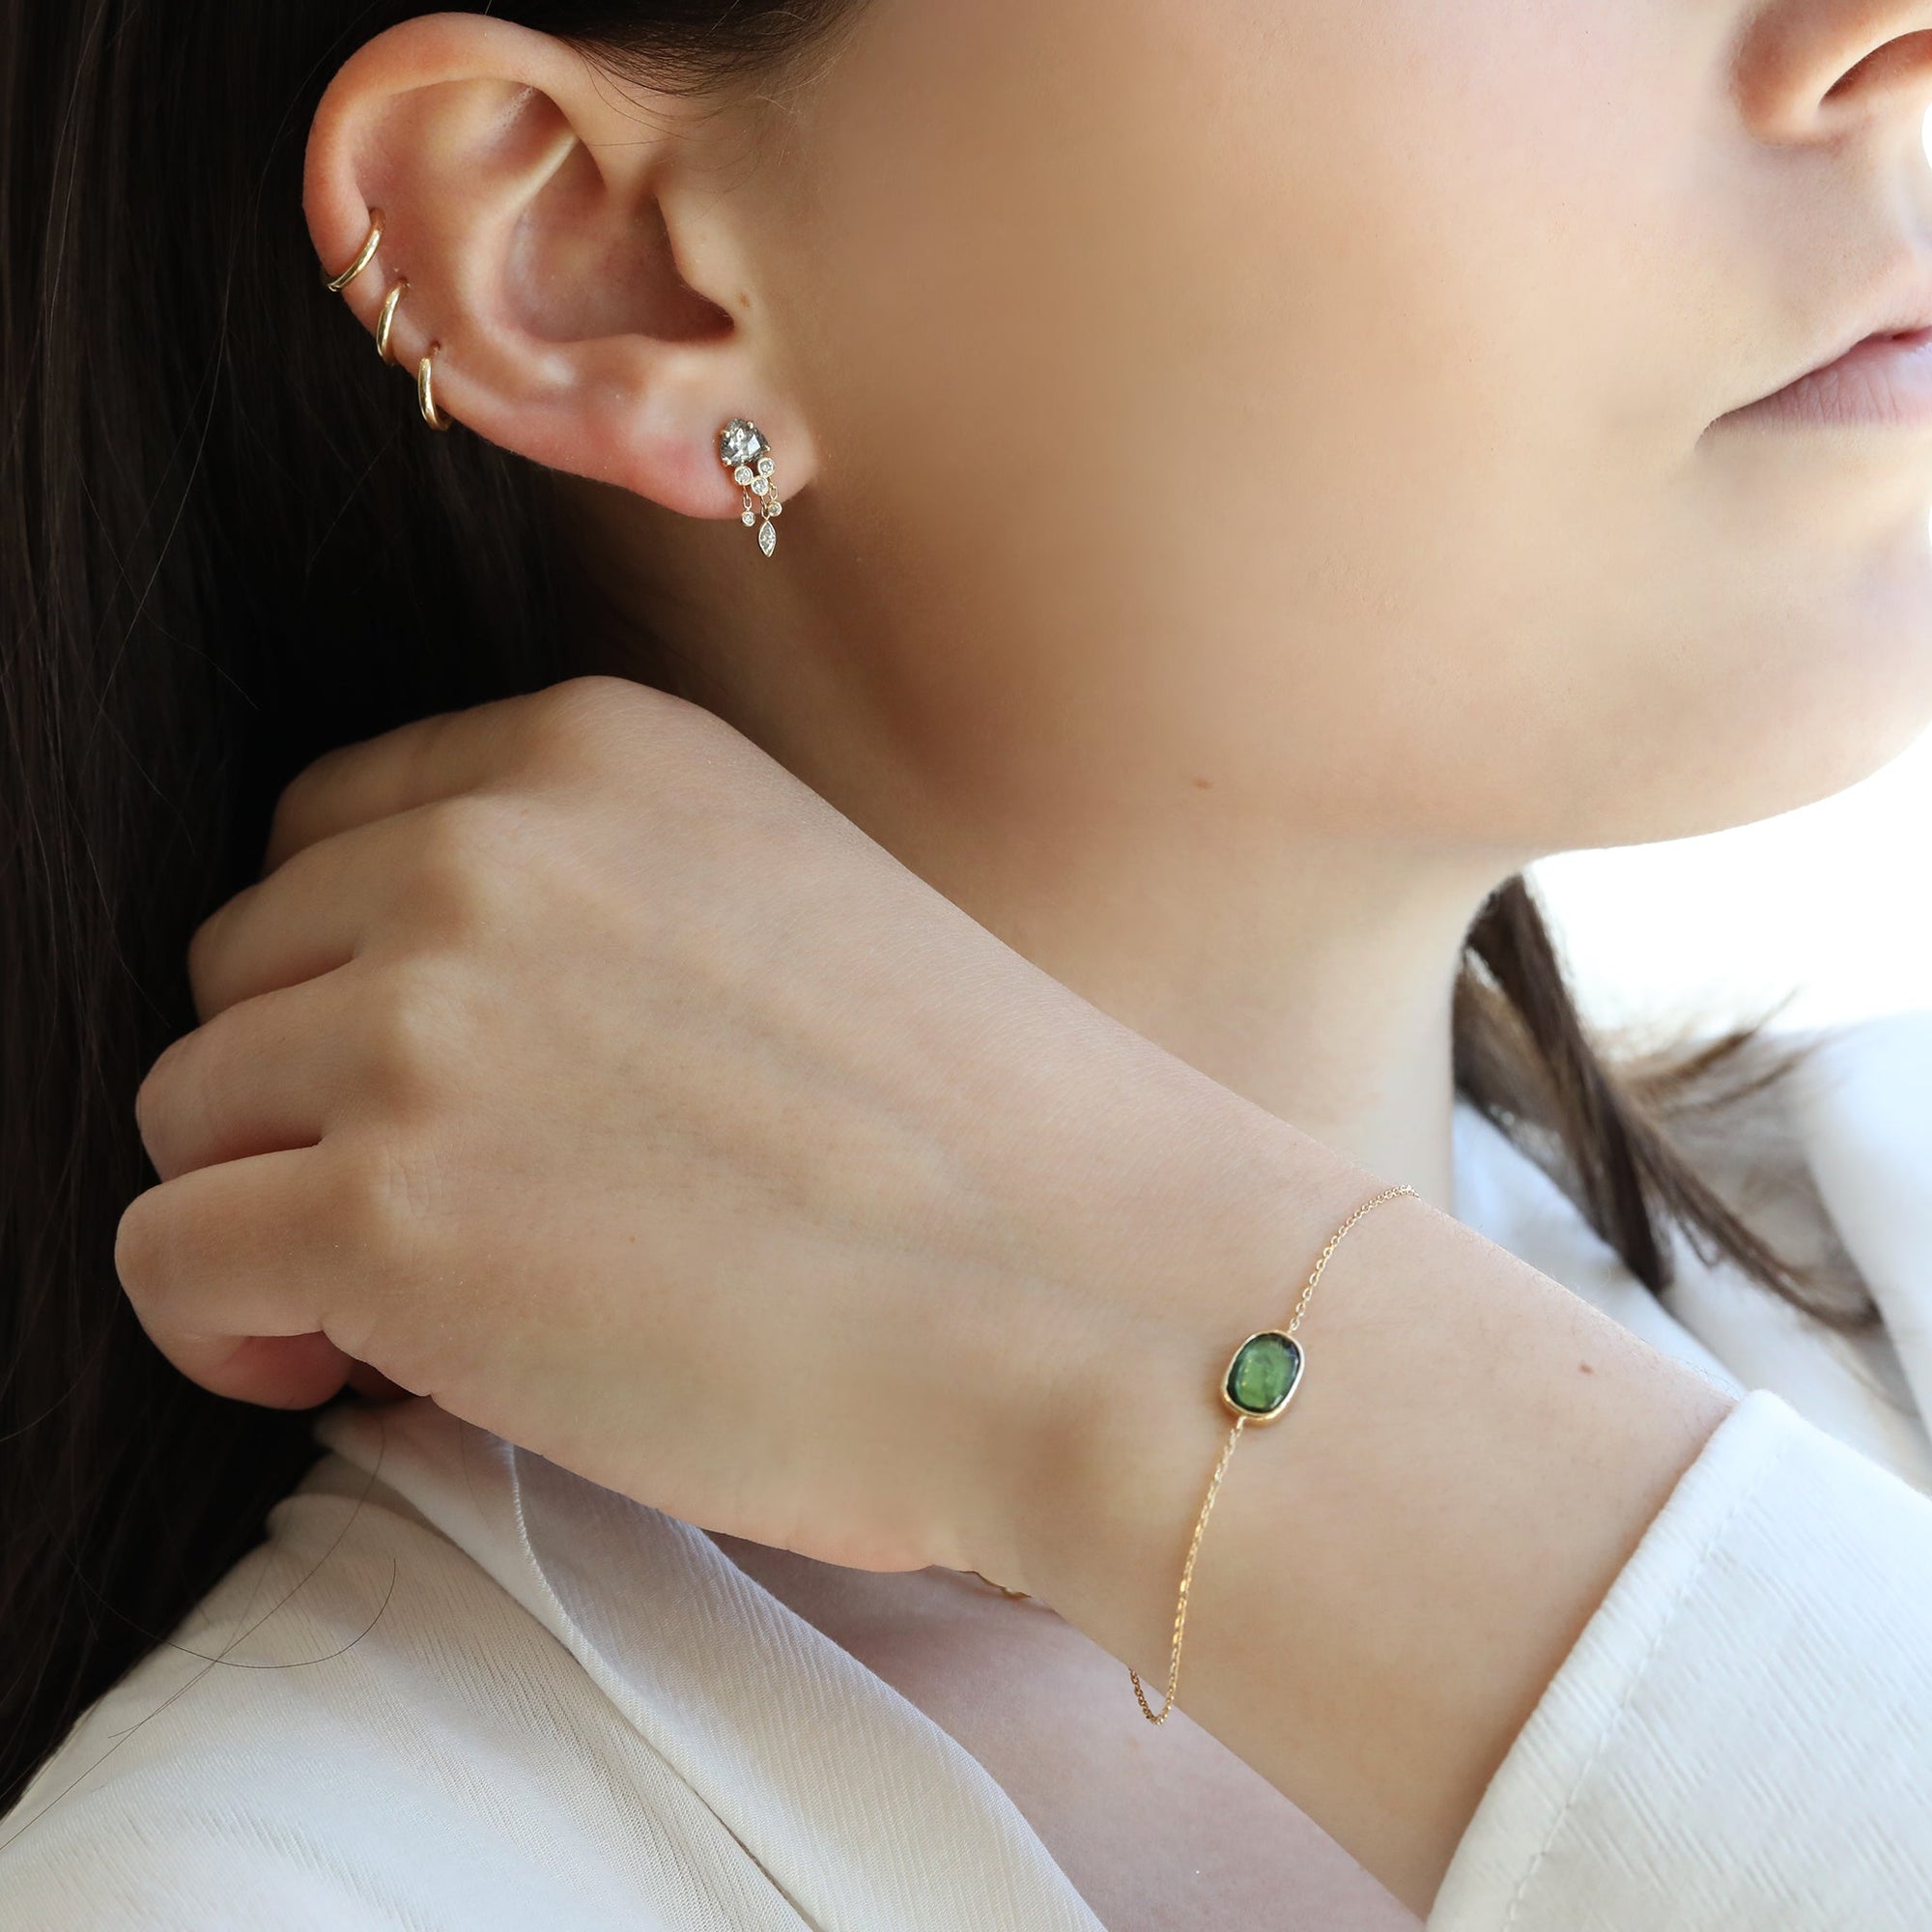 Bezel-Set Green Tourmaline Chain Bracelet - Peridot Fine Jewelry - Celine Daoust